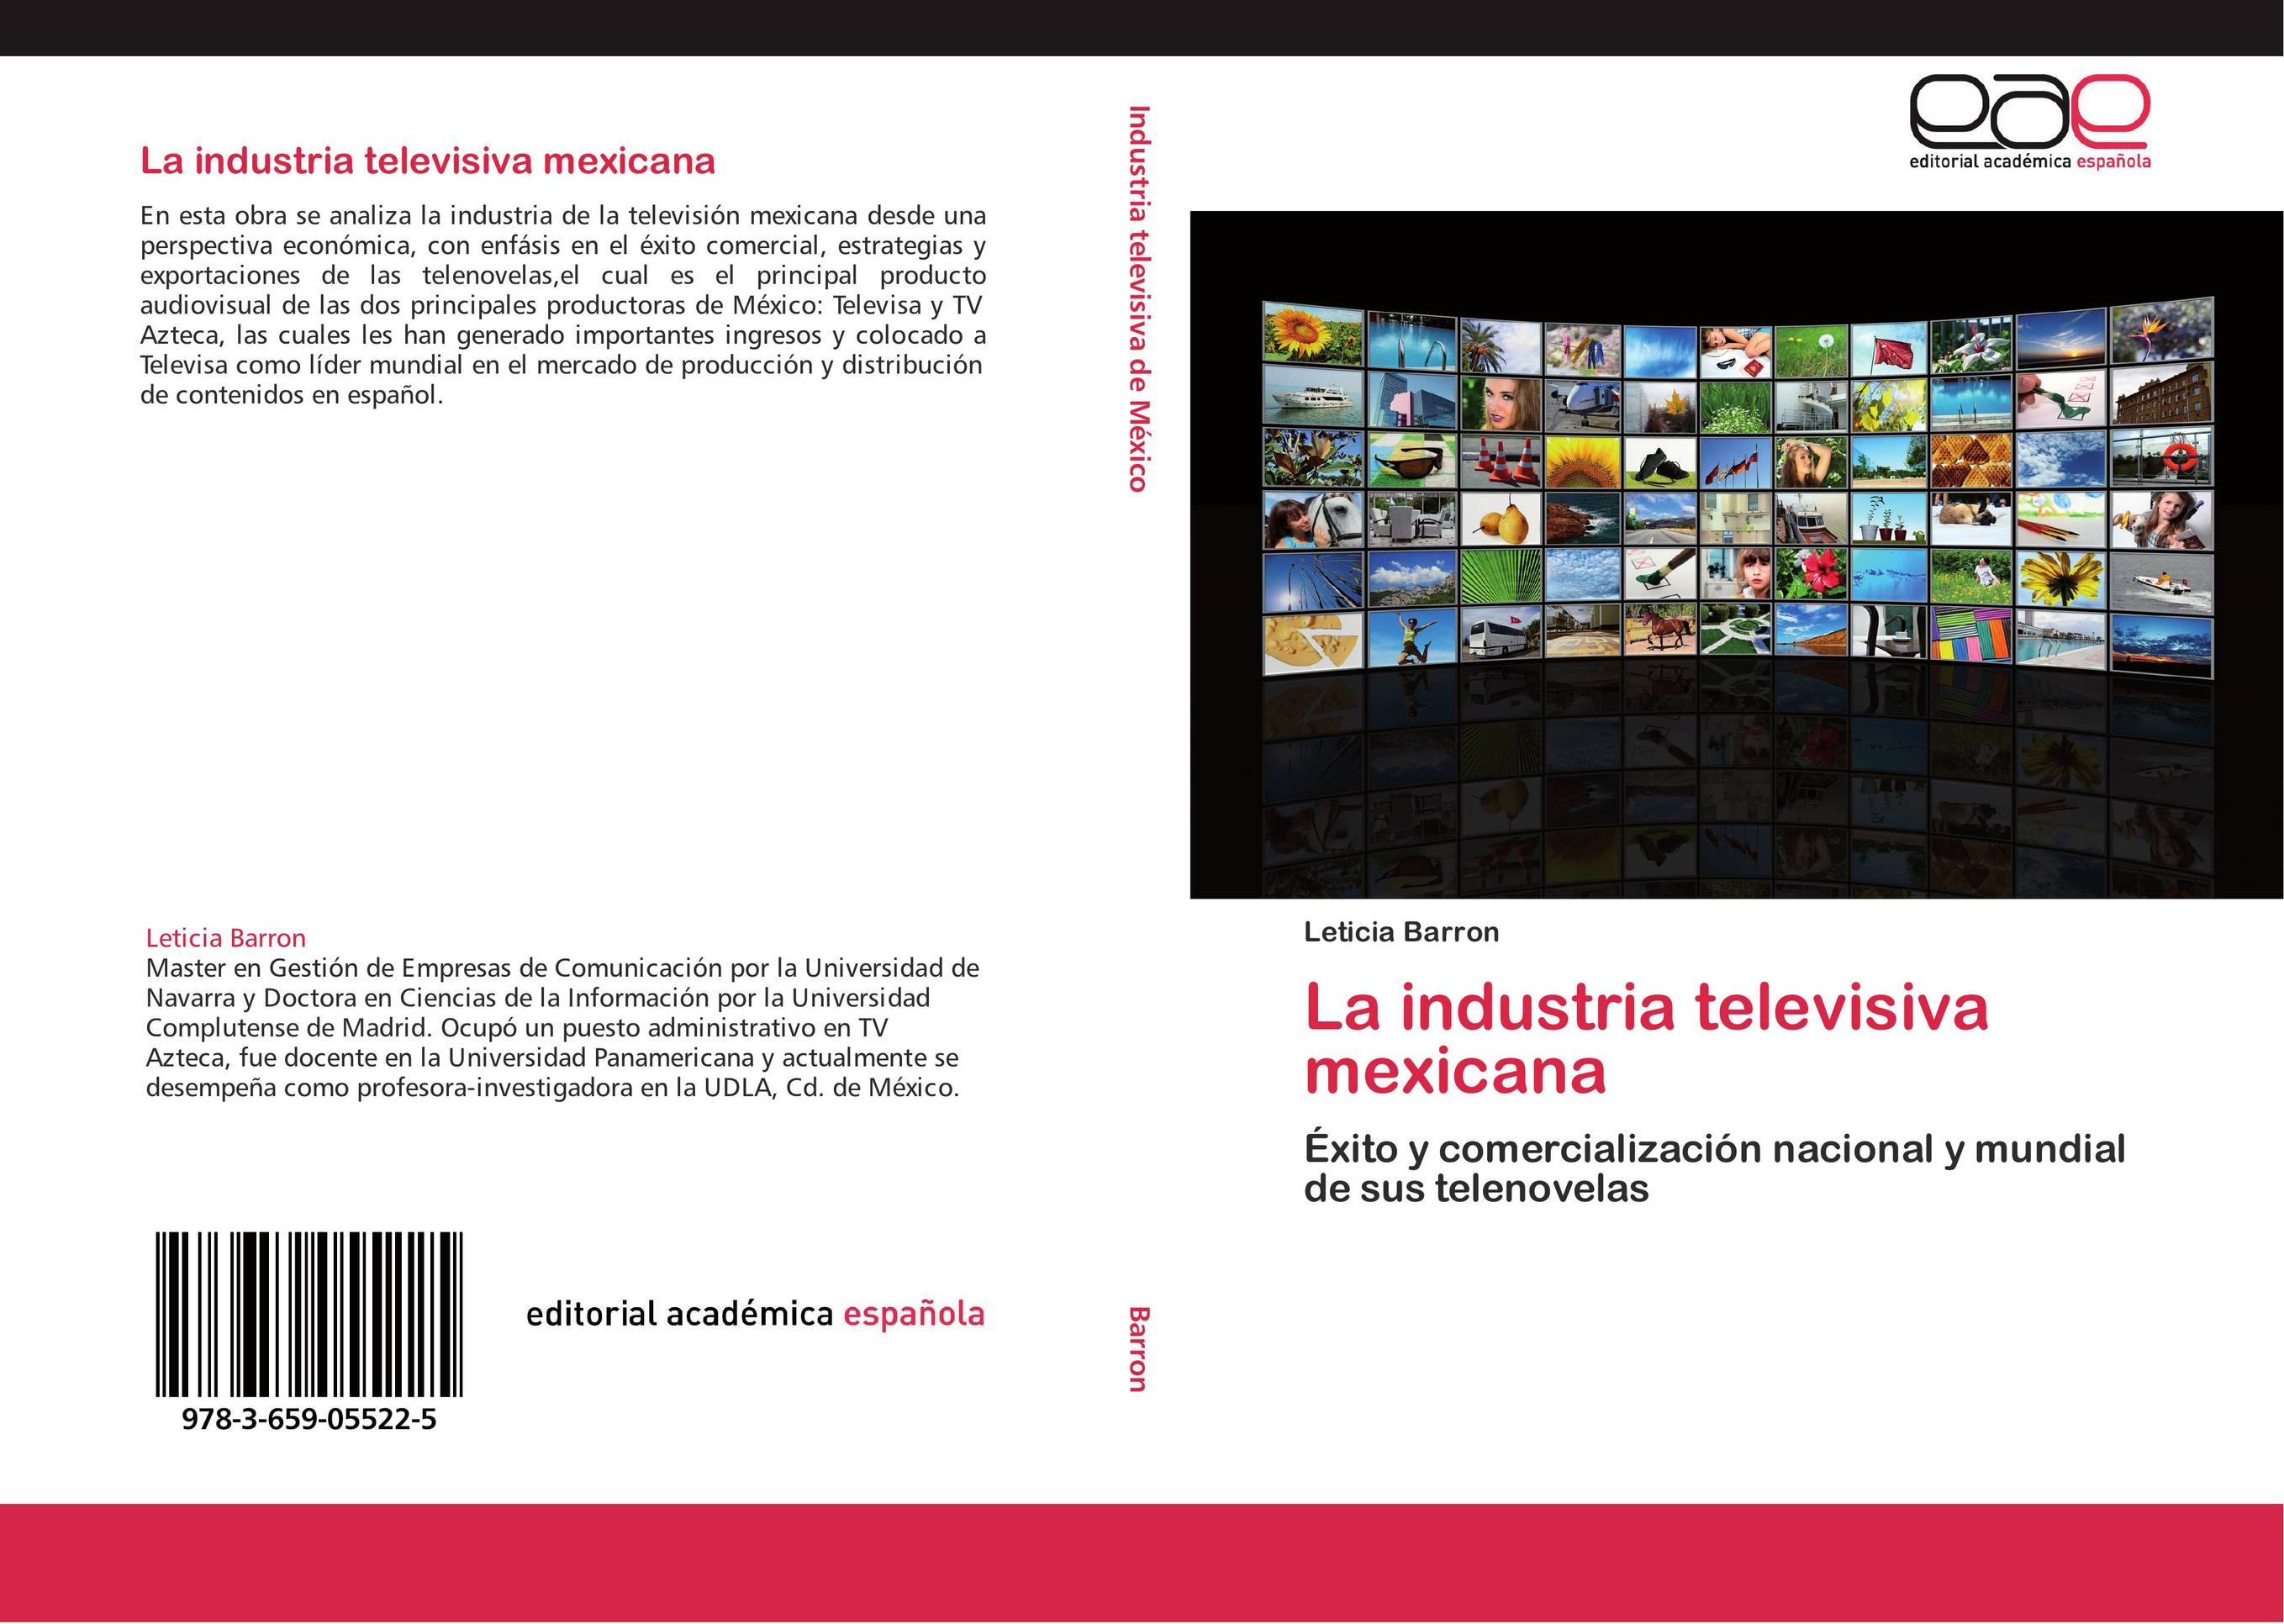 La industria televisiva mexicana